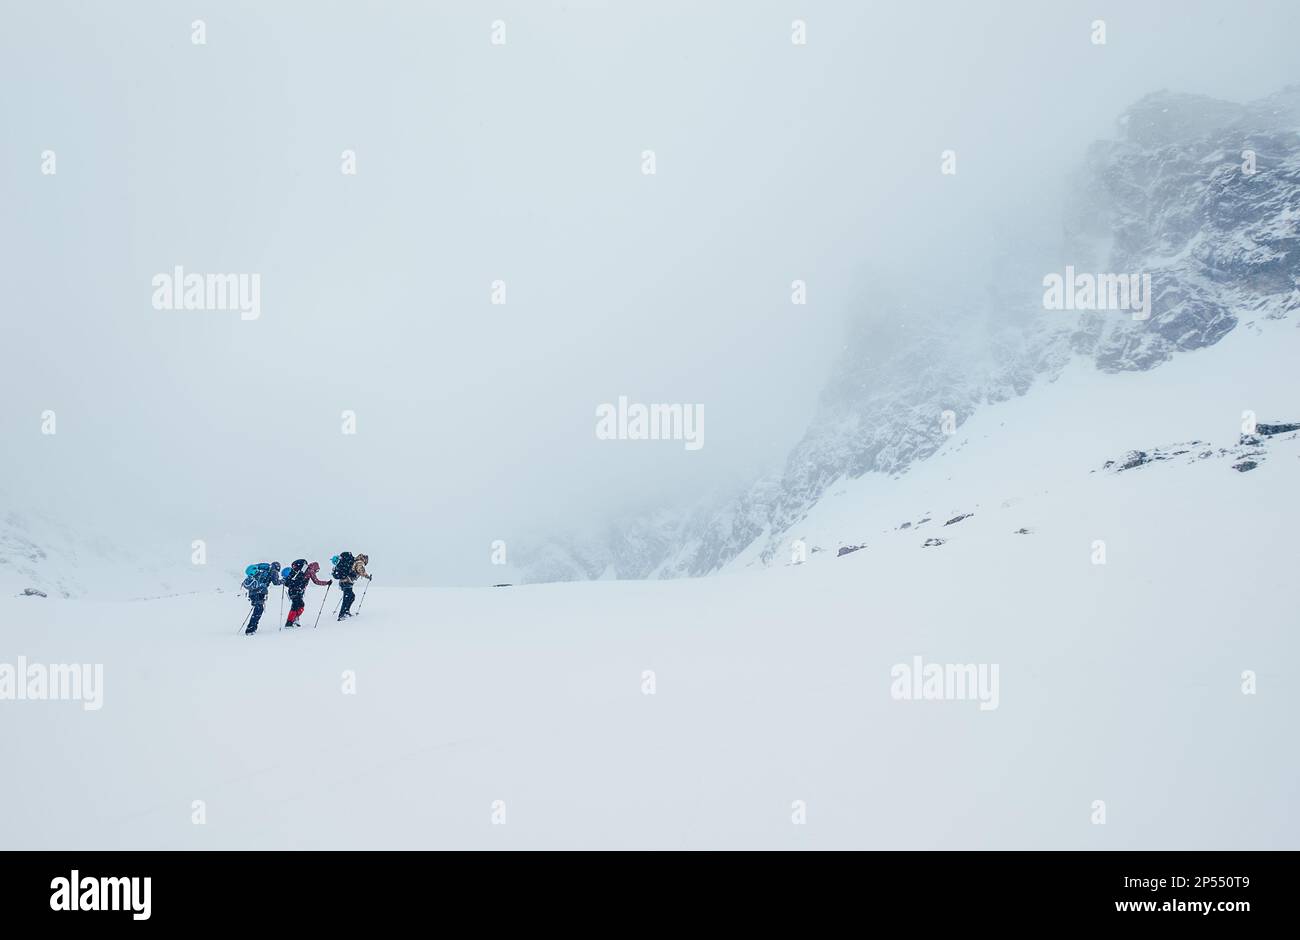 Drei Mitglieder des Seilteams steigen auf den Wintergipfel der hohen Berge. Blizard, der das strukturelle Becken in den Bergen der Vysoke Tatry (hohe Tatra) unter L bedeckt Stockfoto